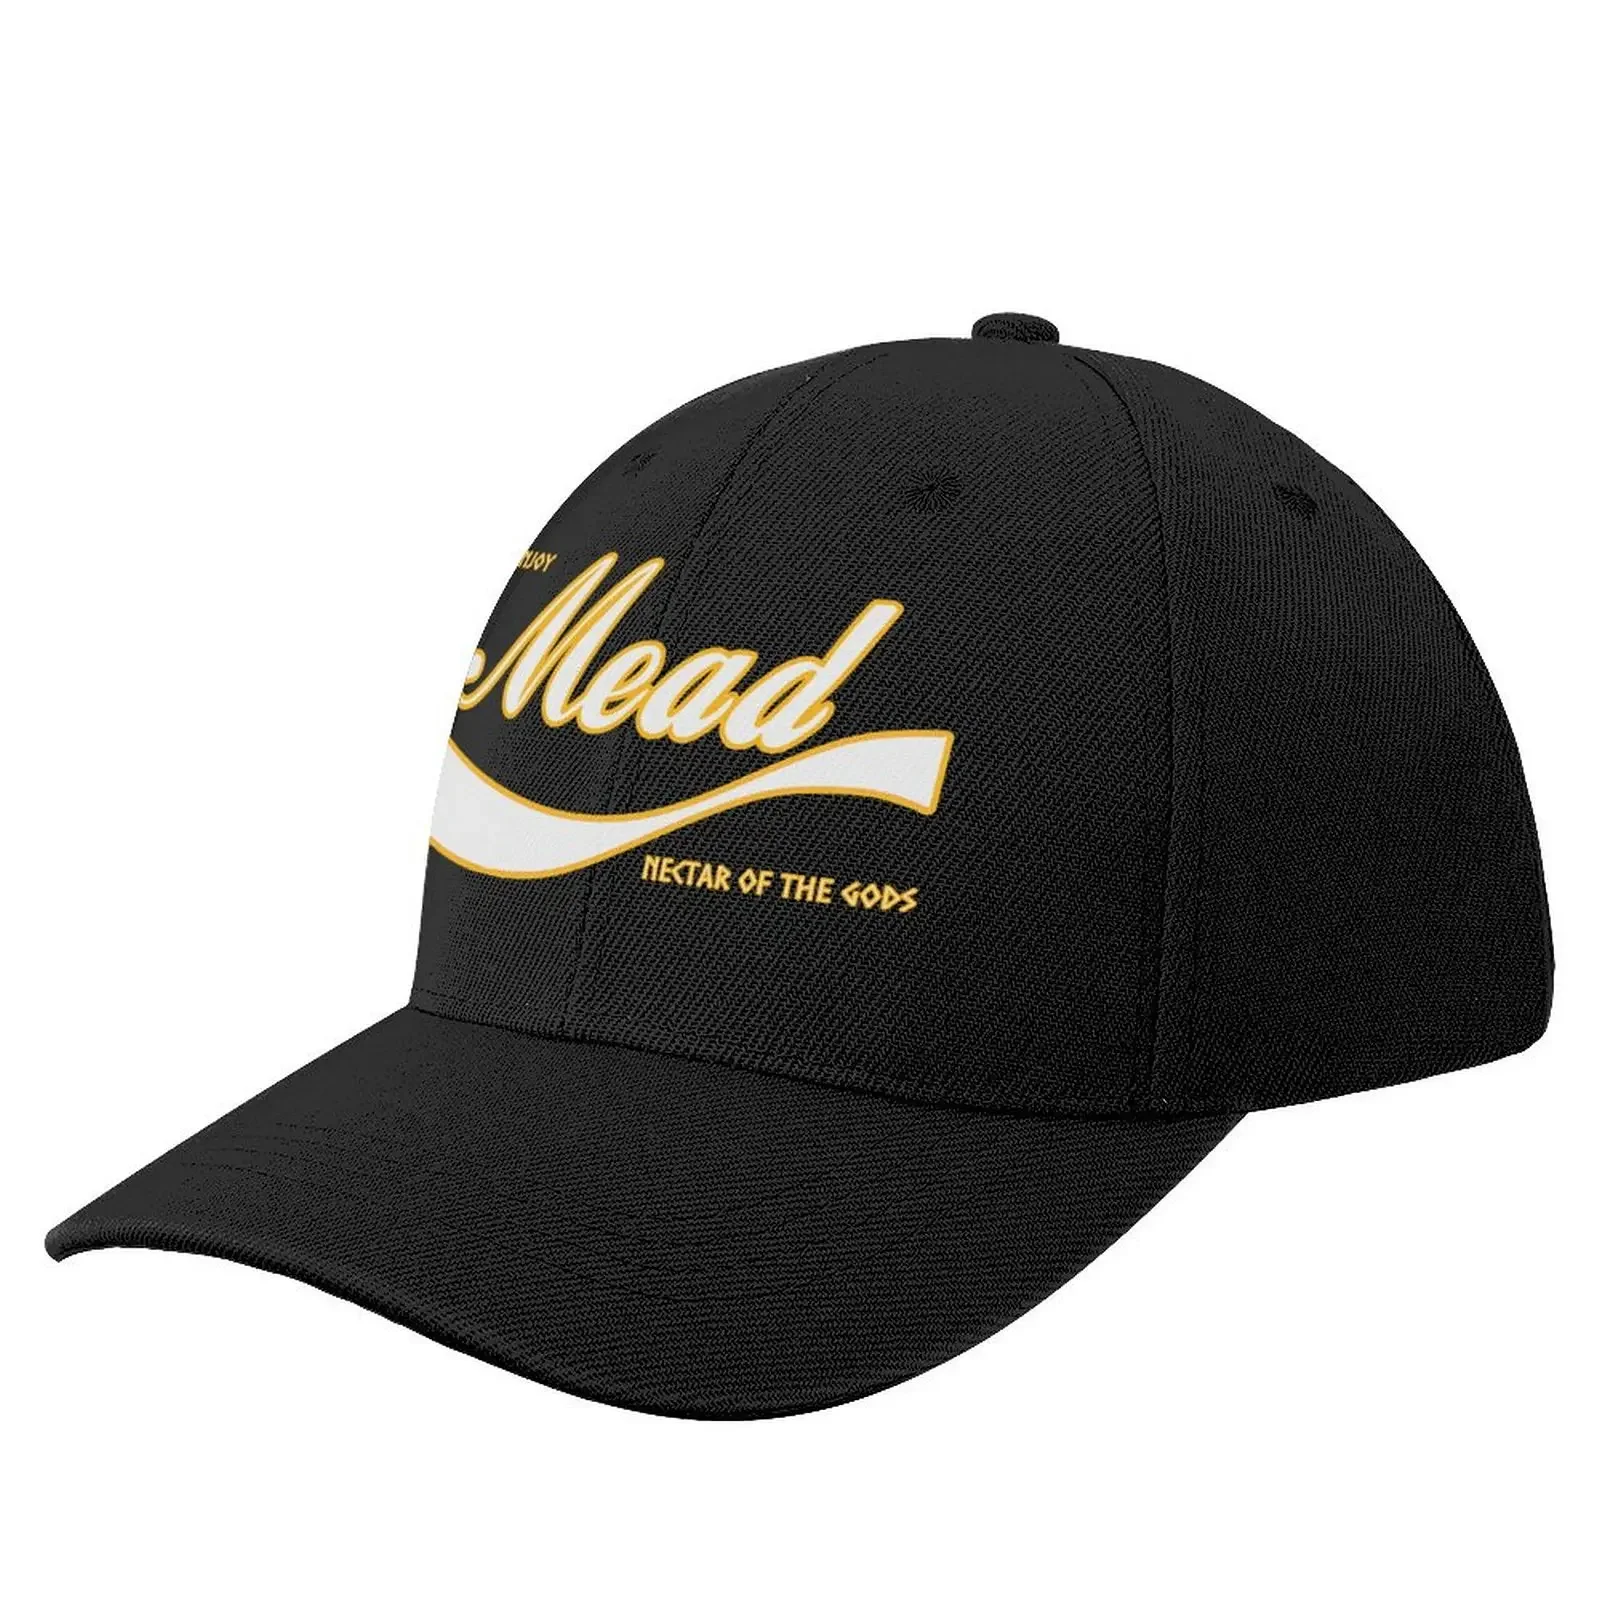 

Enjoy Mead - Nectar of the Gods Baseball Cap Kids Hat |-F-| New In Hat New In The Hat Golf Wear Men Women's